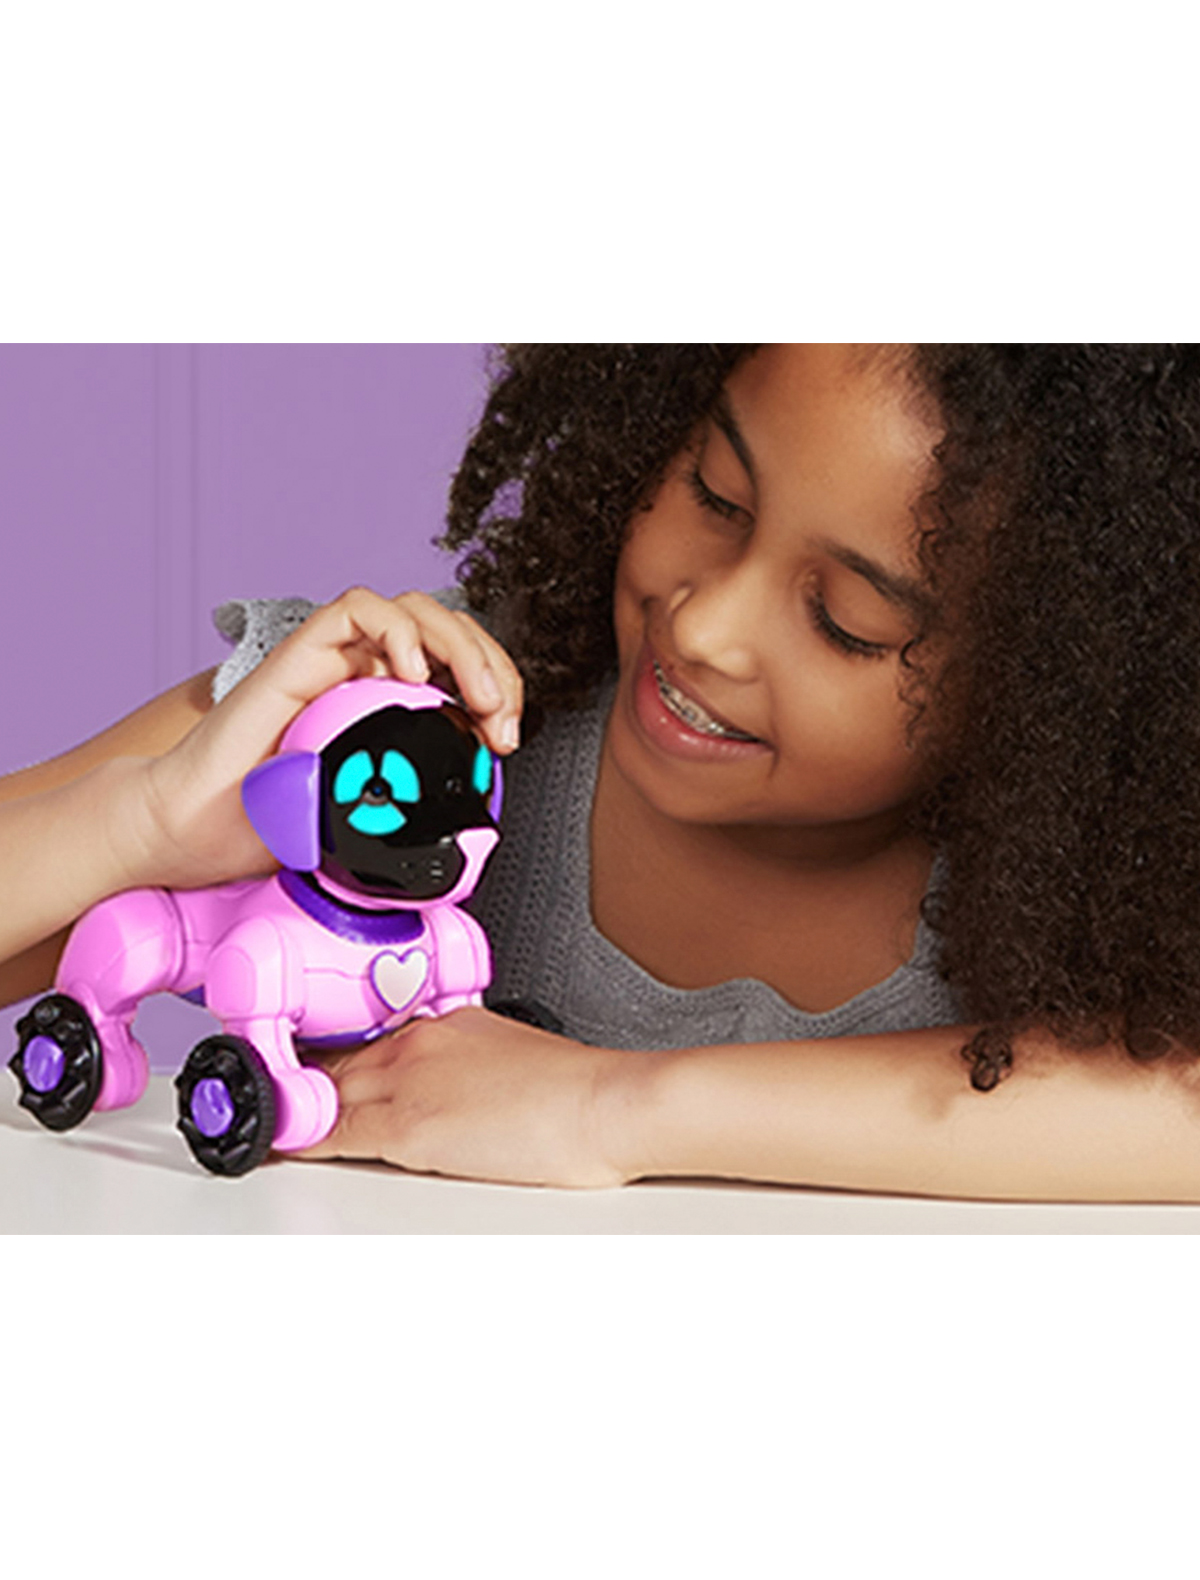 Топовые игрушки. Робот WOWWEE Chippies. Собака интерактивная WOWWEE. Интерактивная игрушка робот WOWWEE Chip. Популярные игрушки для девочек.